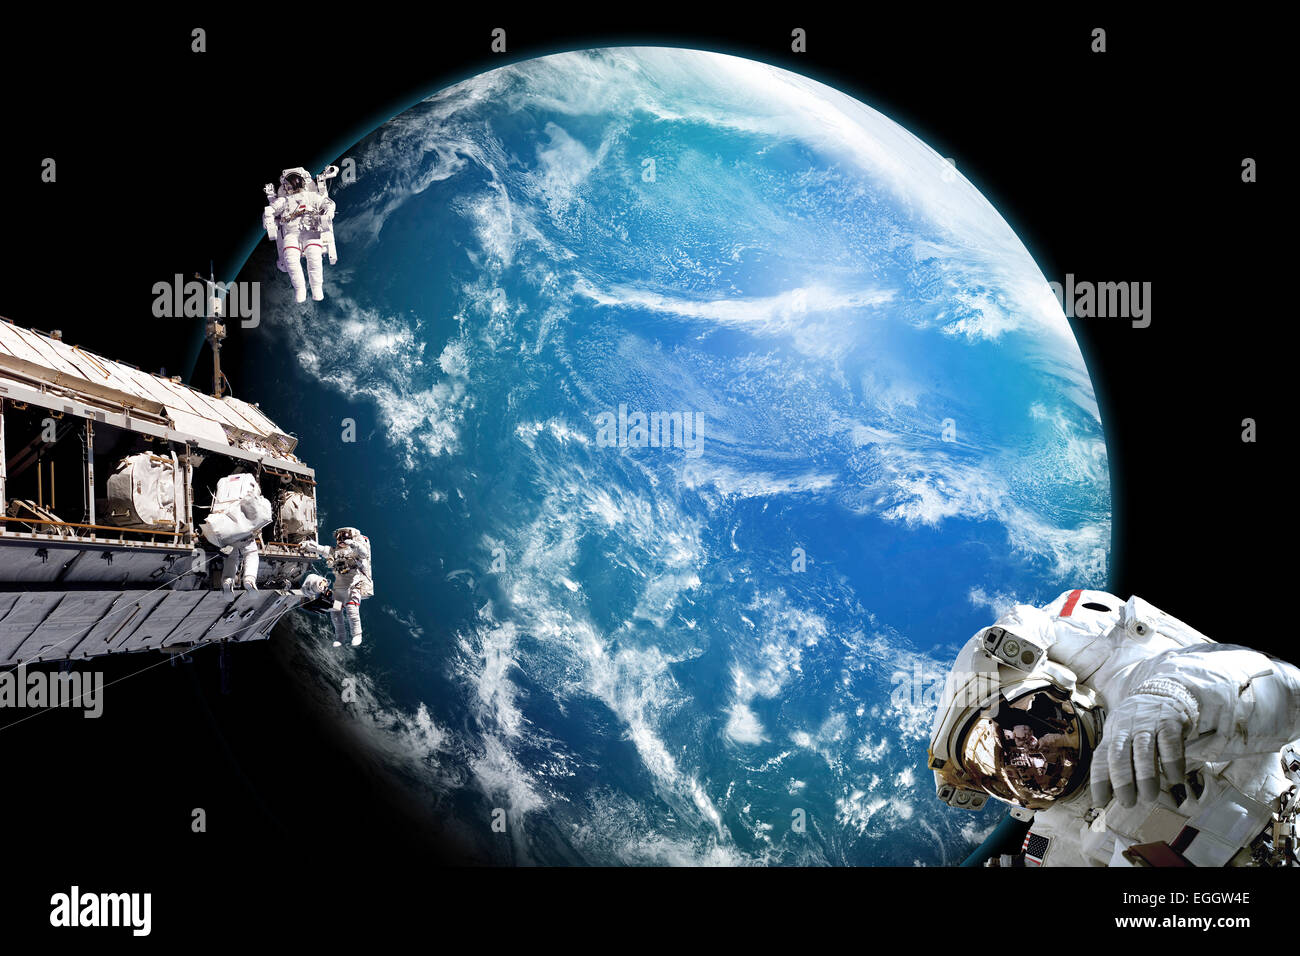 Une équipe d'astronautes effectuent des travaux sur une station spatiale en orbite au-dessus d'un étranger bien que couvert d'eau de la planète. Nuages sur la turbulence p Banque D'Images